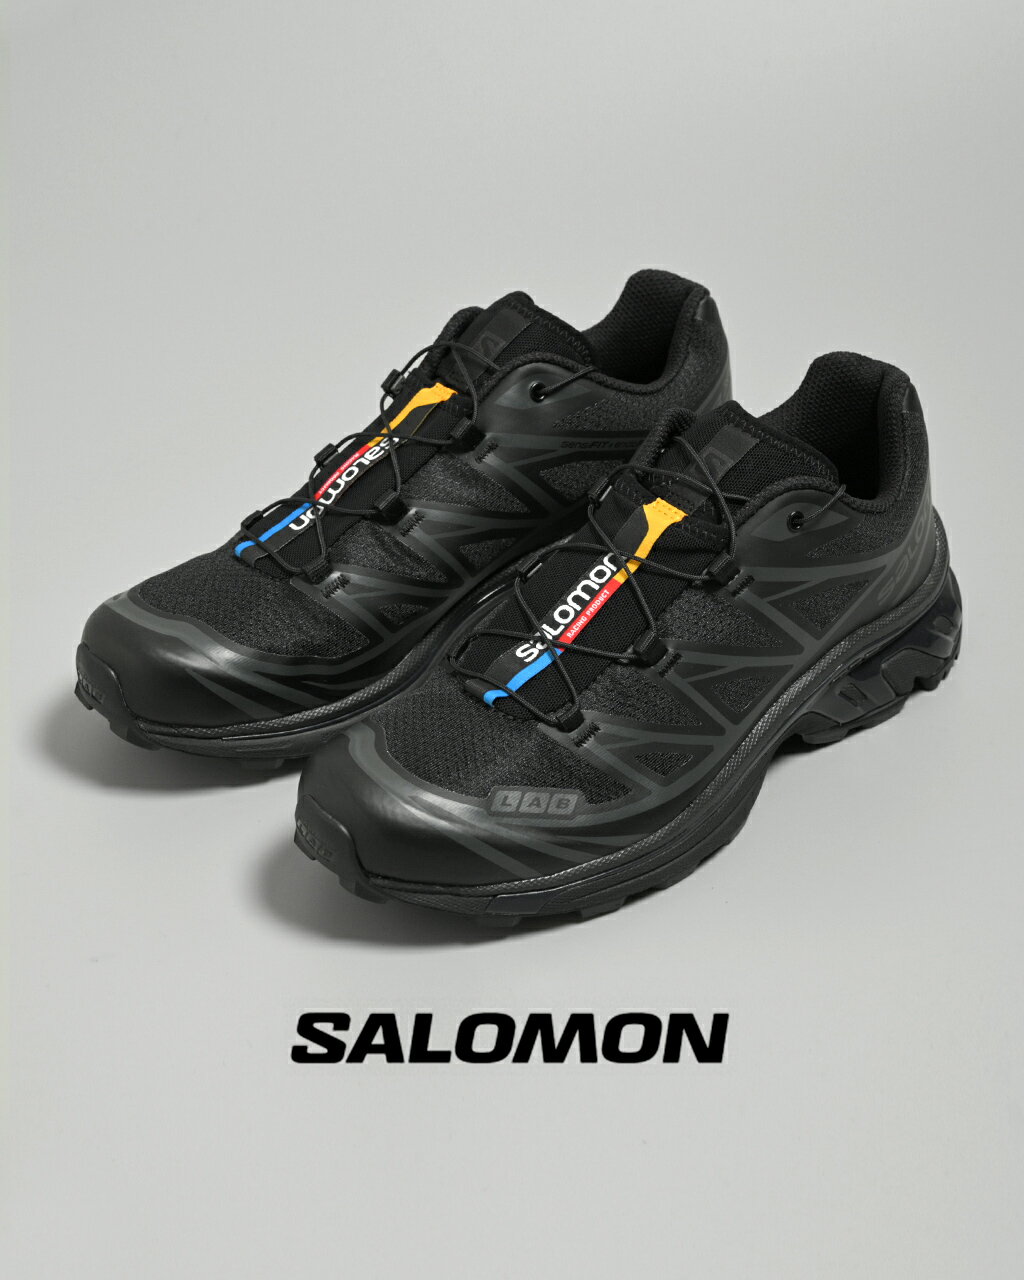 サロモン SALOMON XT-6 スポーツ スタイル シューズ スニーカー ブラック メンズ レディース L410866 L474448 L4744530124